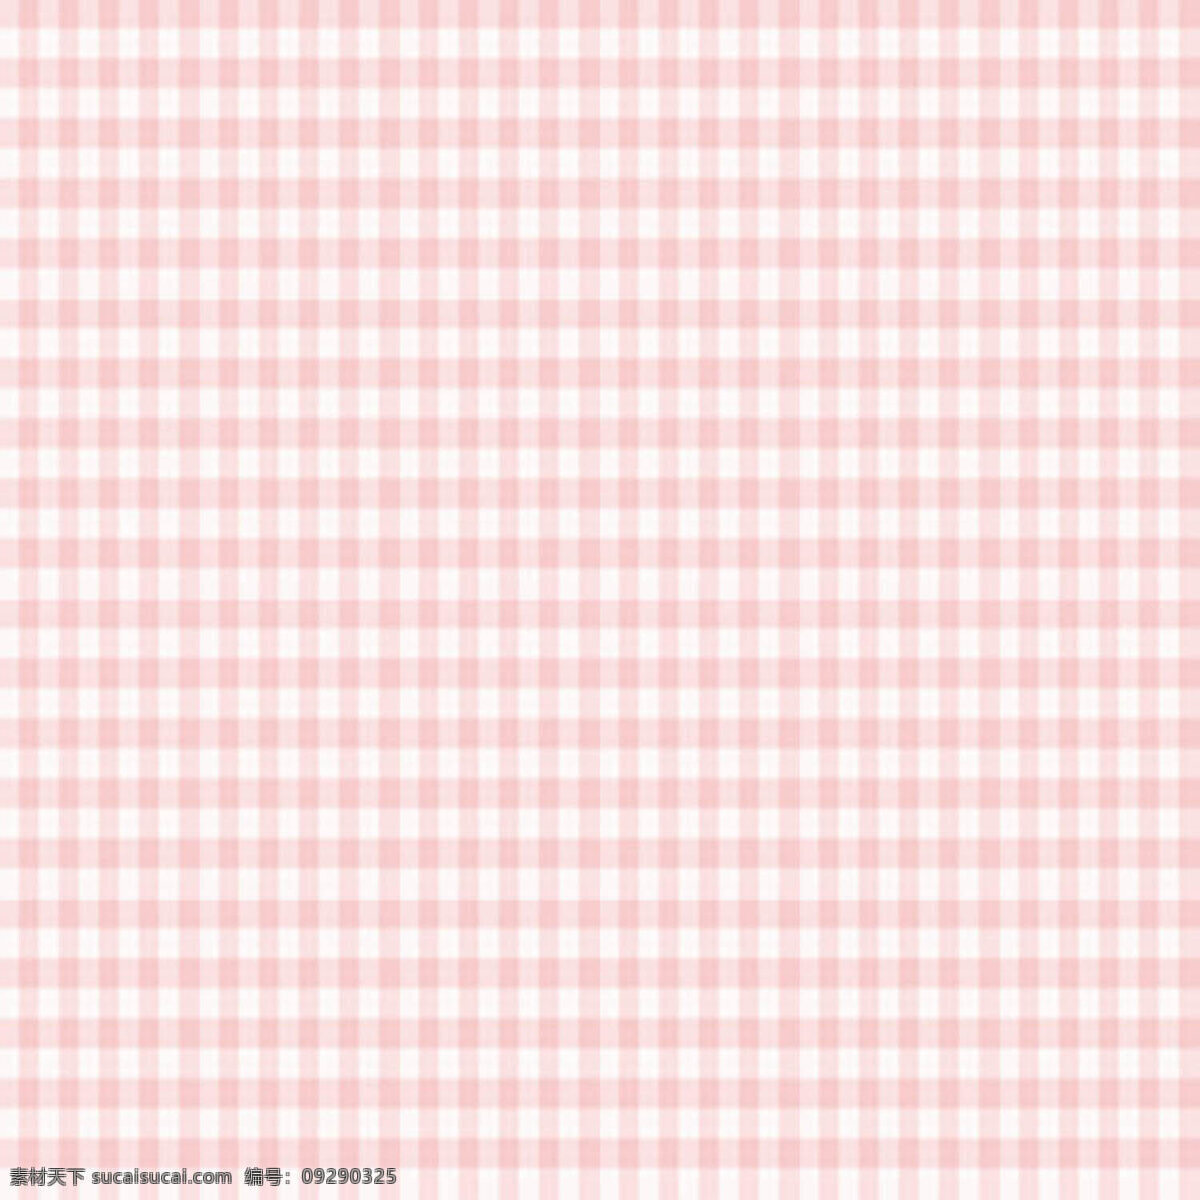 粉红 格子 布纹 白色 斑马纹 传统 红色 面料 素雅 条纹 斜条纹 红 白相 间 斜纹 苏格兰格 斜格子 背景图片